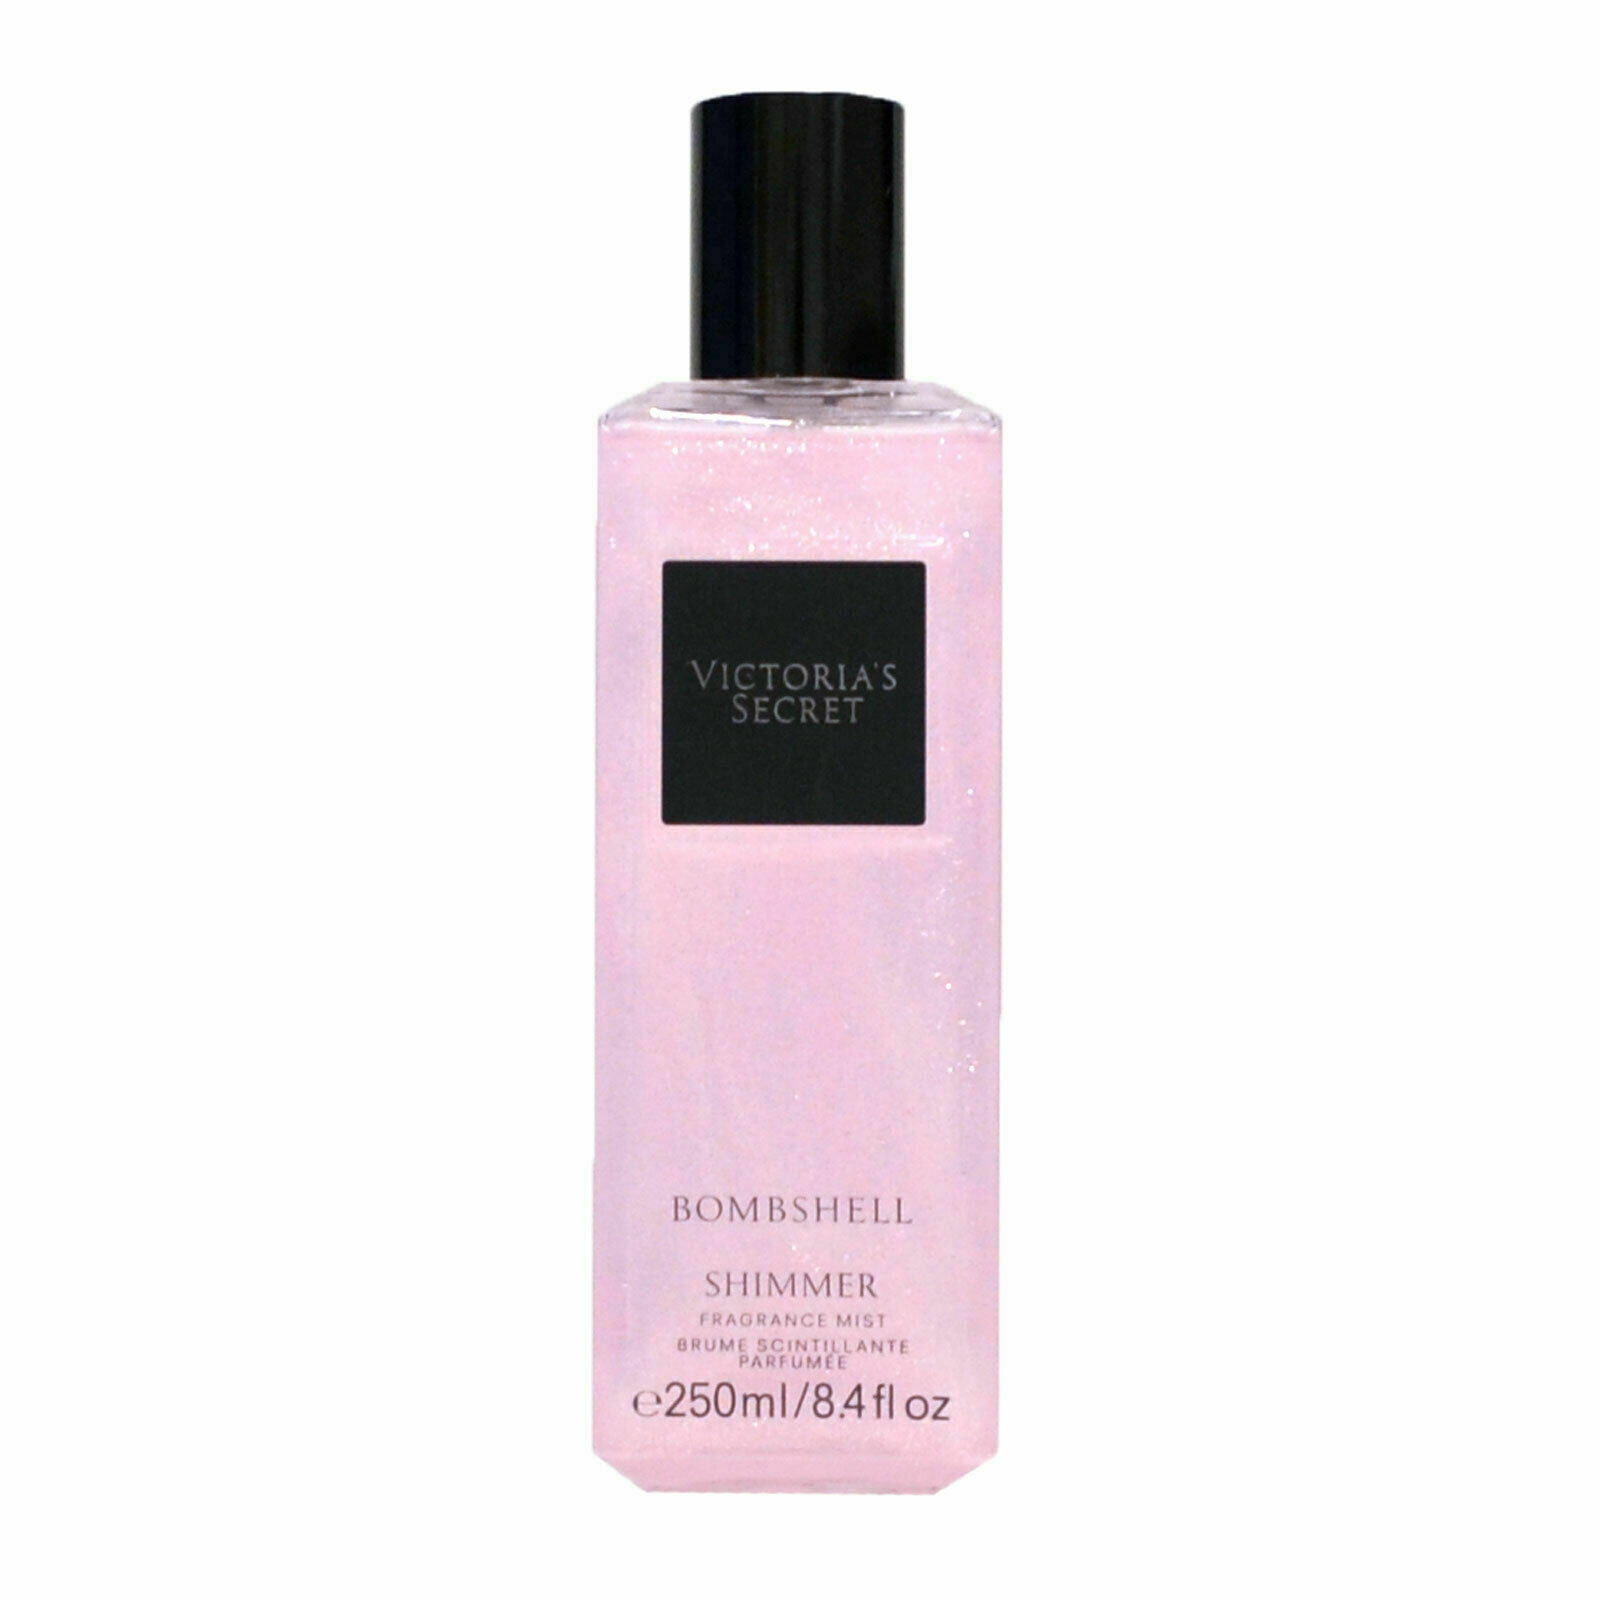 Victoria's Secret Fragrance Mist Body Spray Splash 8.4 Fl Oz New